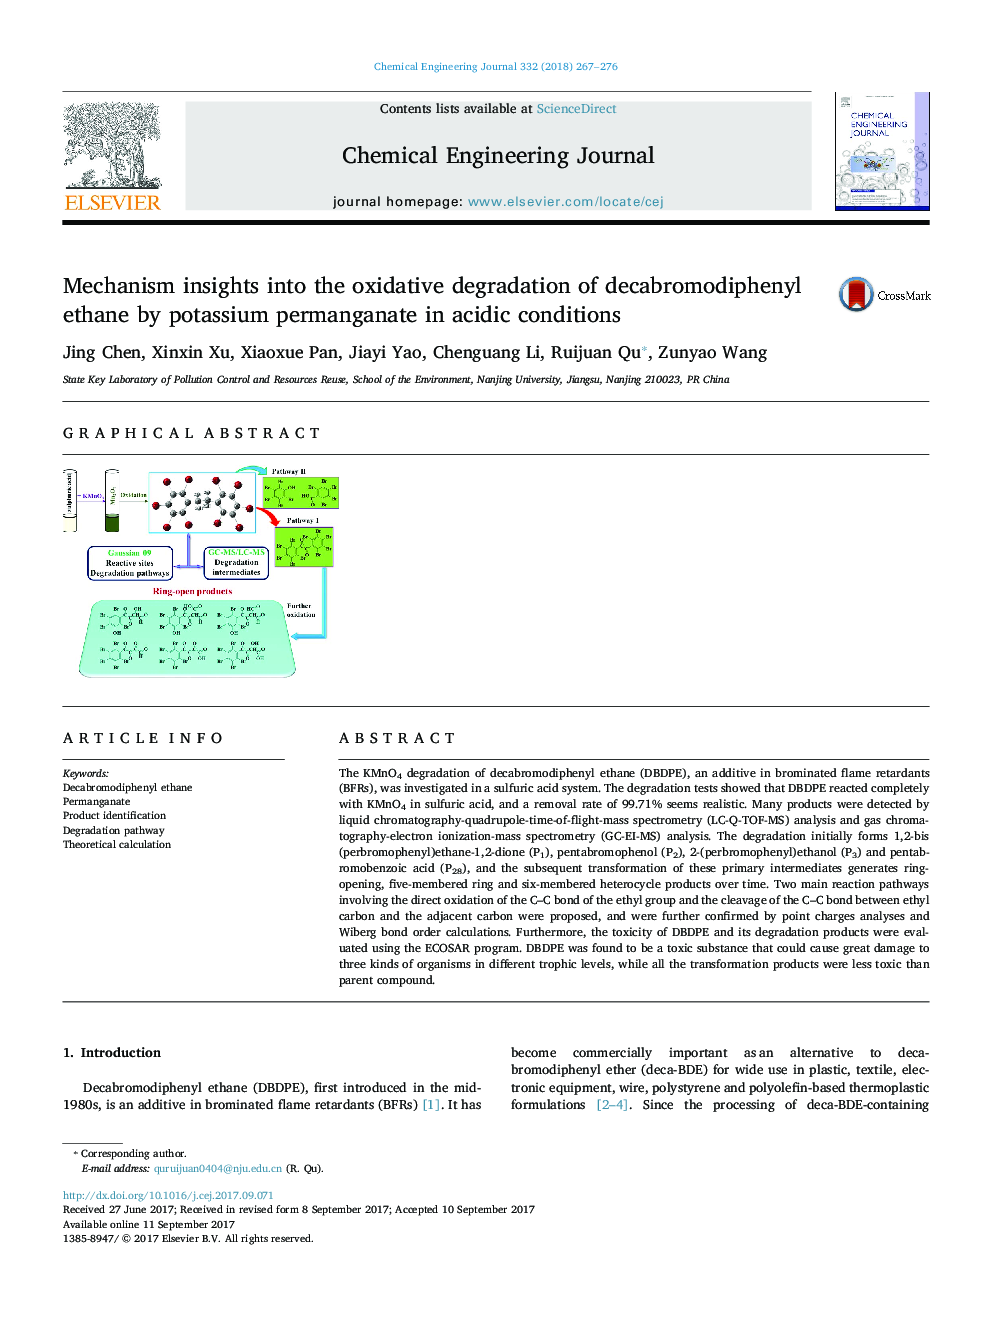 بینش مکانیسم به تخریب اکسیداتیو دابرومودیفنیل اتان توسط پرمنگنات پتاسیم در شرایط اسیدی